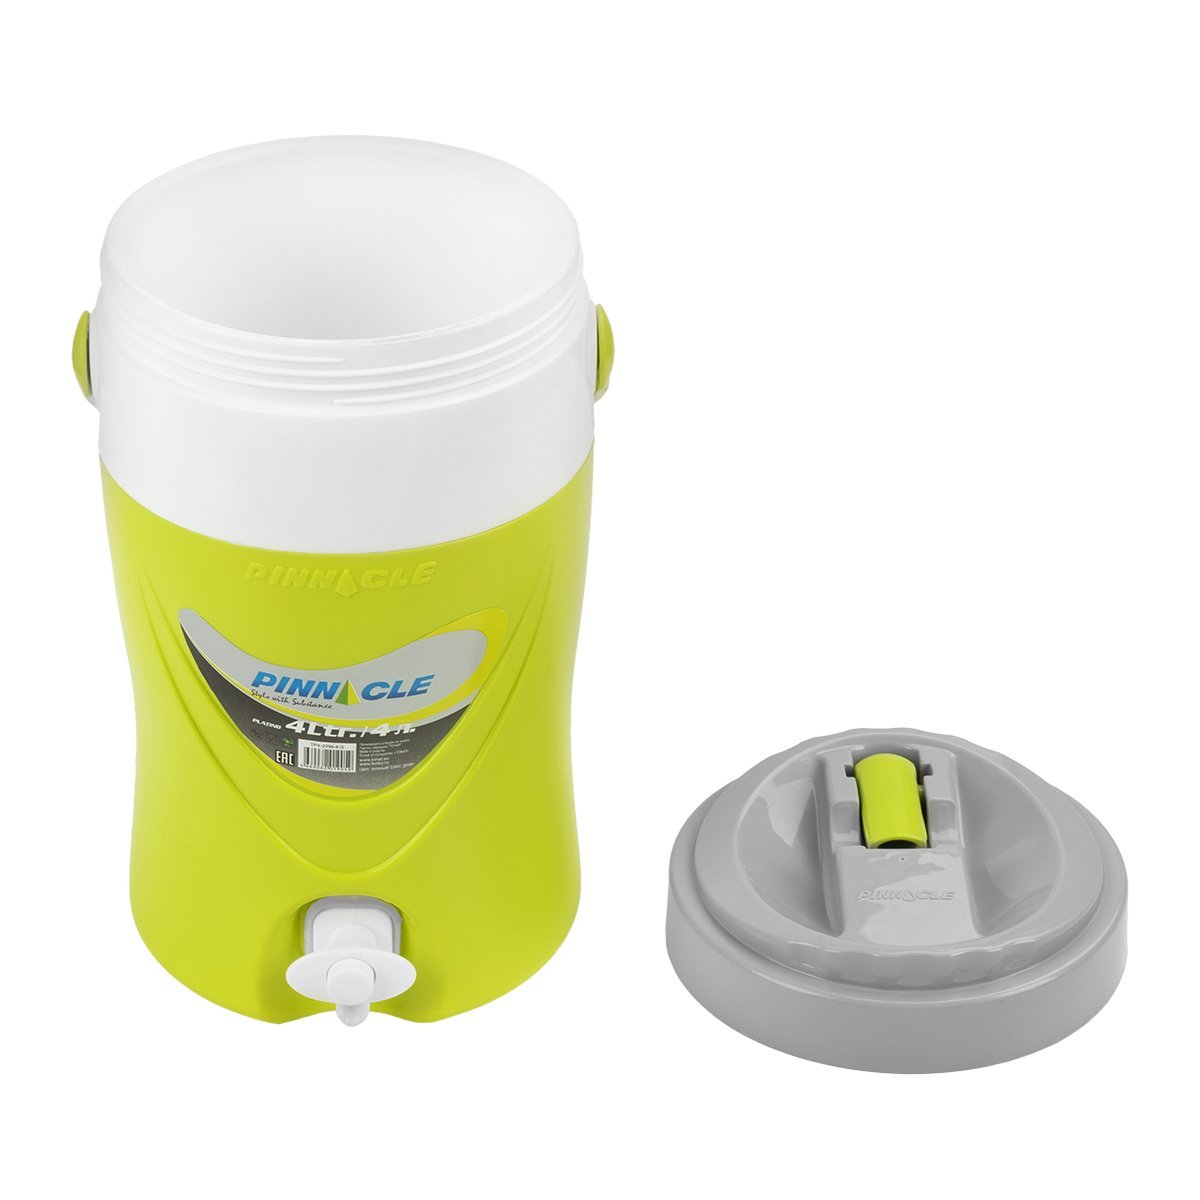 Platino Beverage Cooler Jug with Spigot for Picnics, Camping, 4 qt